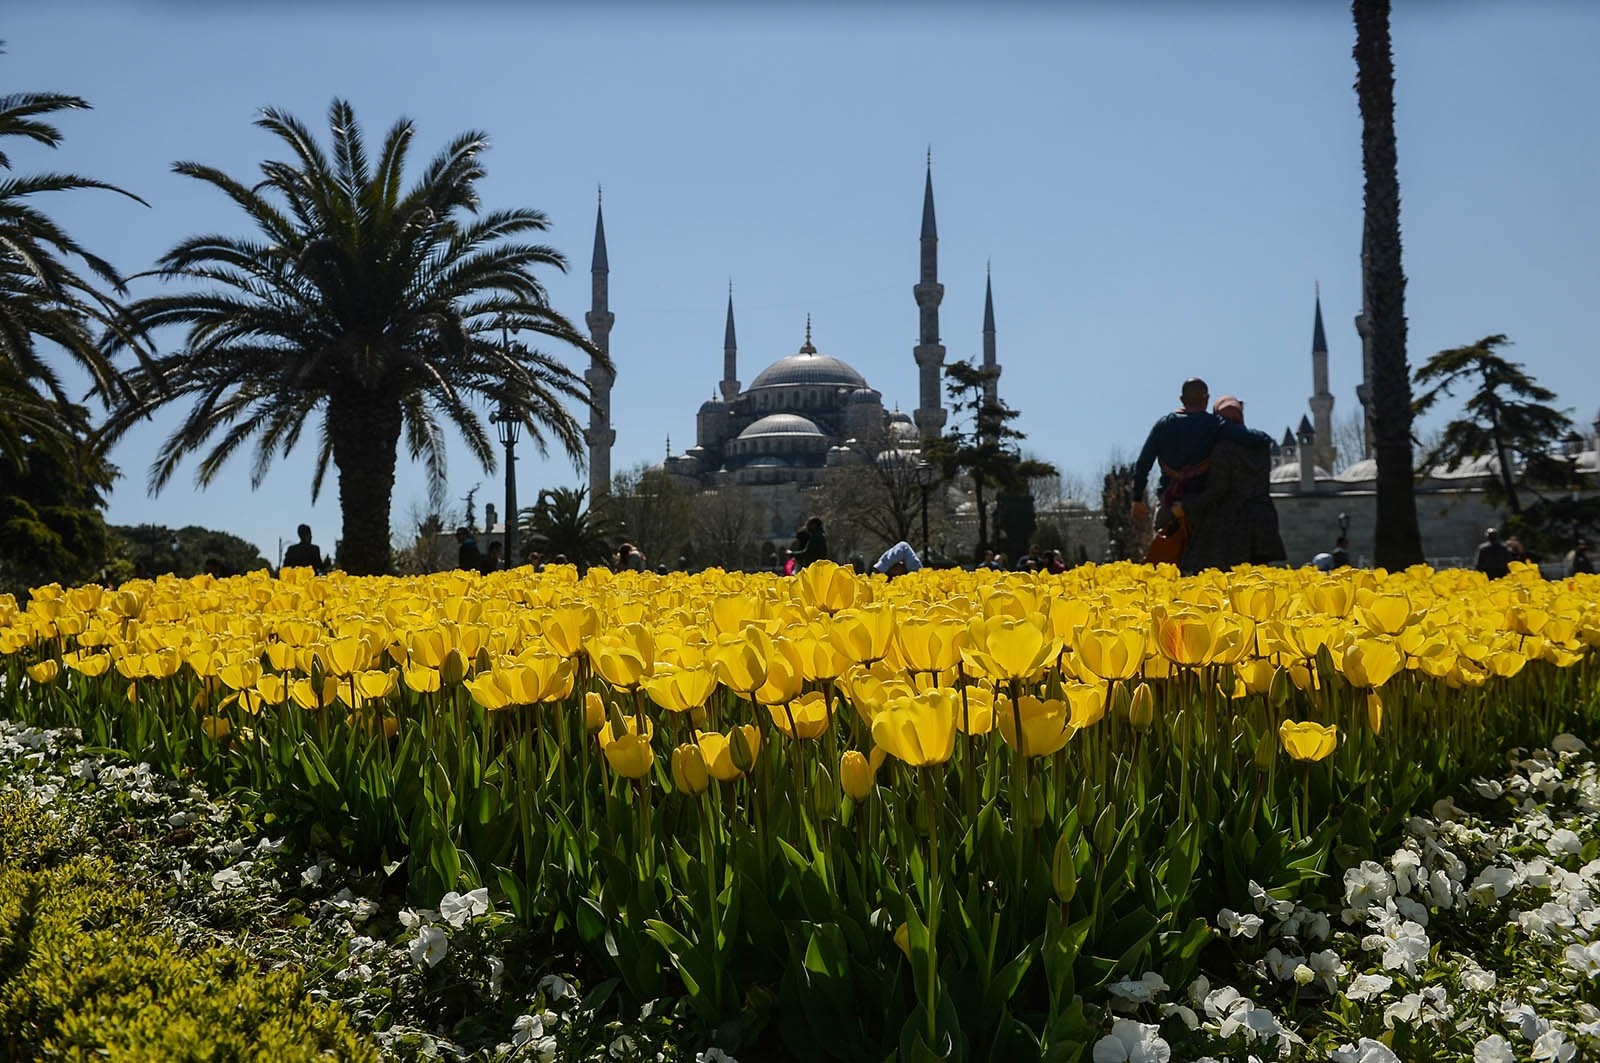 Стамбул весной. Фестиваль тюльпанов в Стамбуле Топкапы. Султанахмет Стамбул тюльпаны. Султанахмет фестиваль тюльпанов.